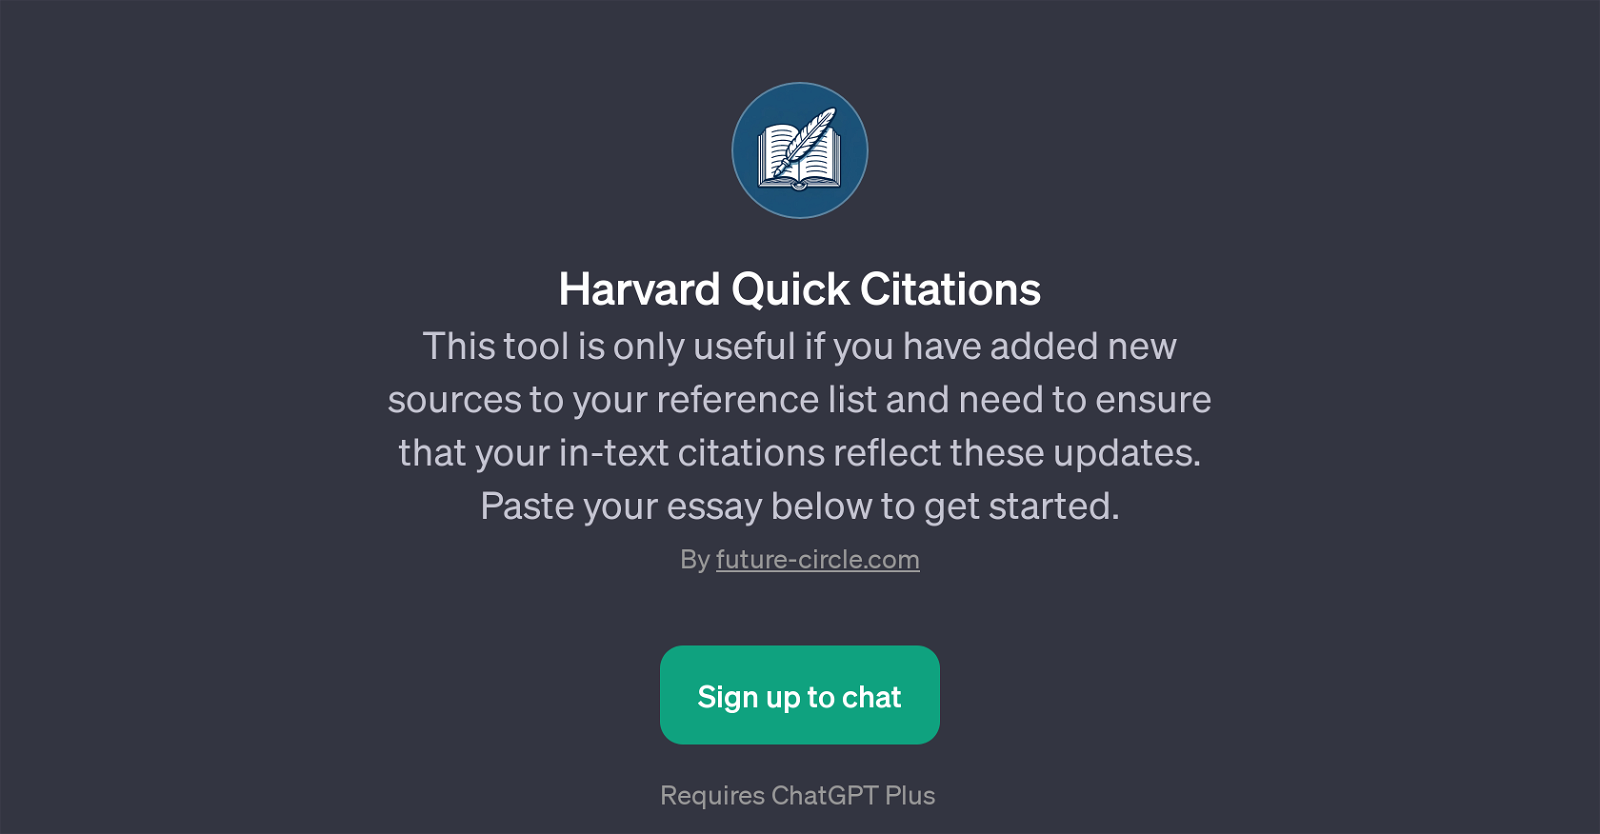 Harvard Quick Citations website